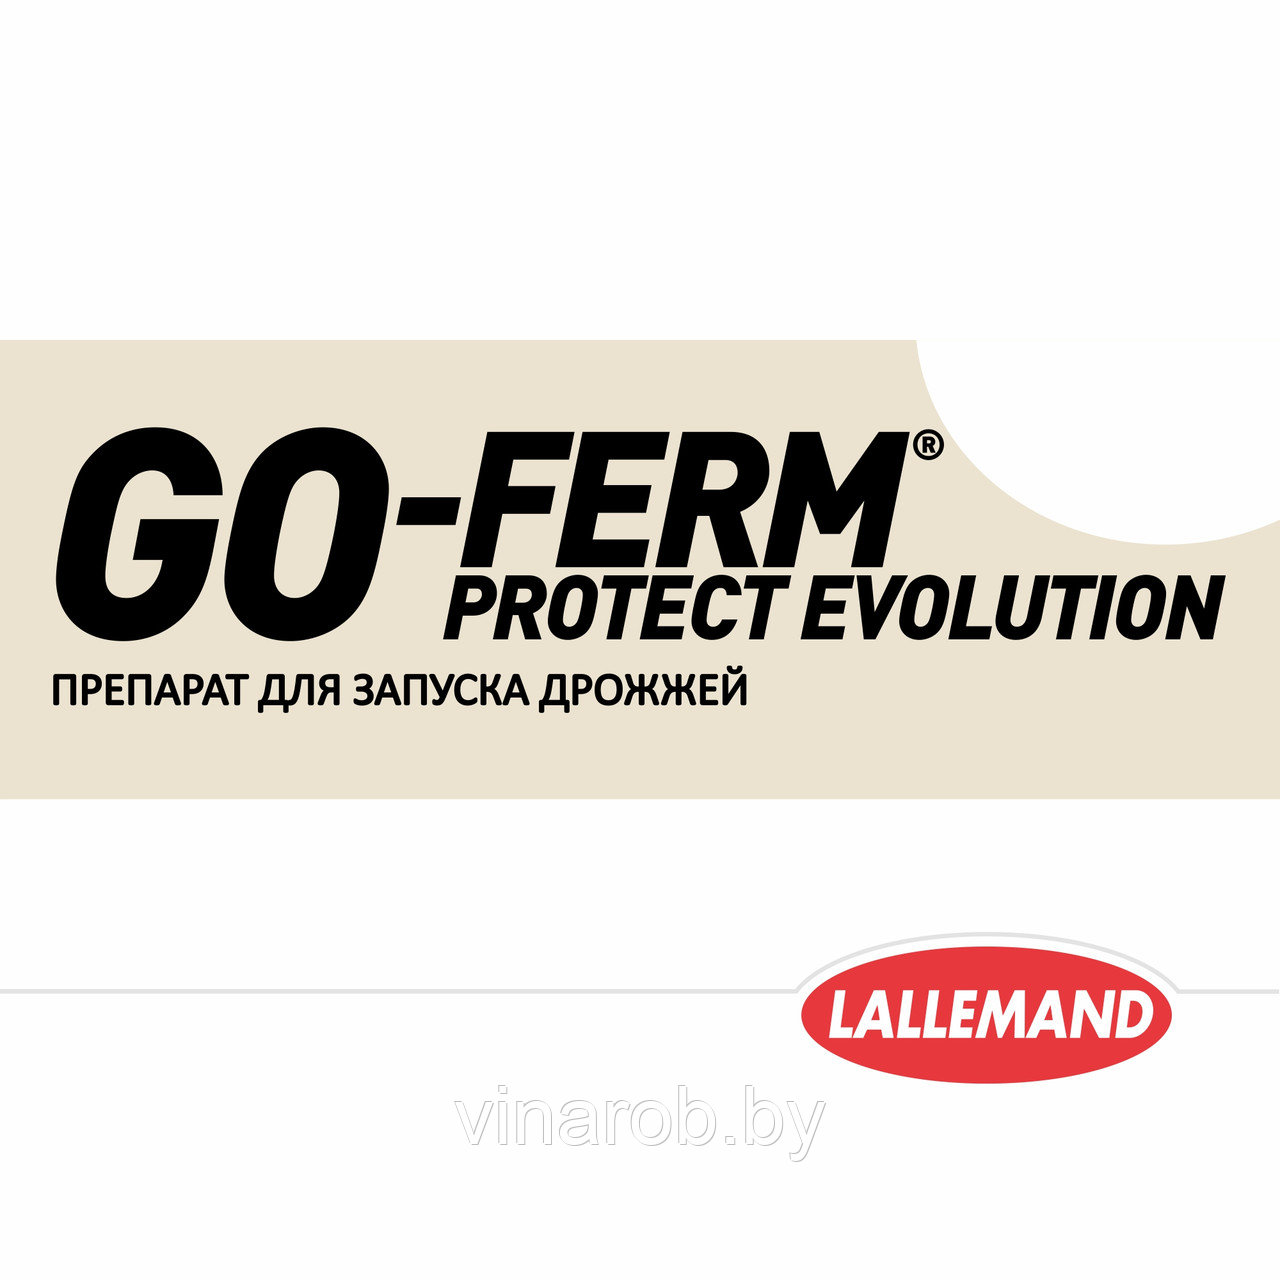 Препарат для запуска дрожжей Go-Ferm Protect Evolution (40 г)